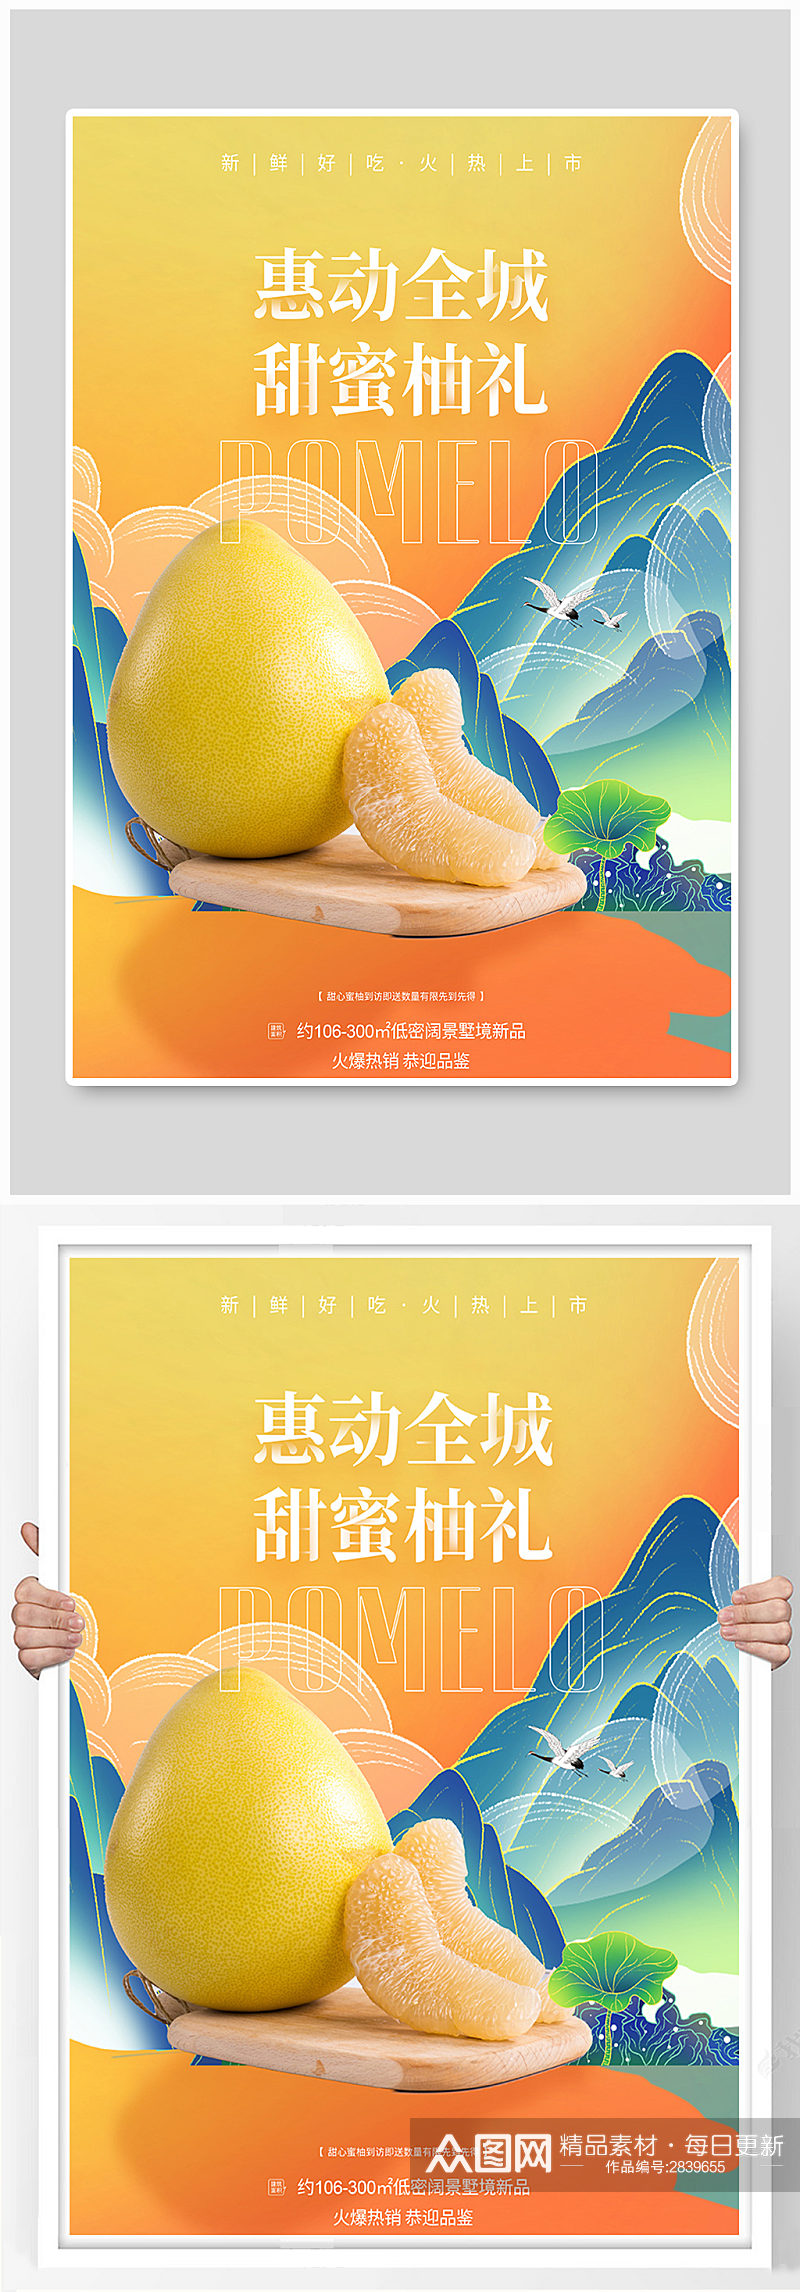 国潮新鲜柚子水果促销海报素材